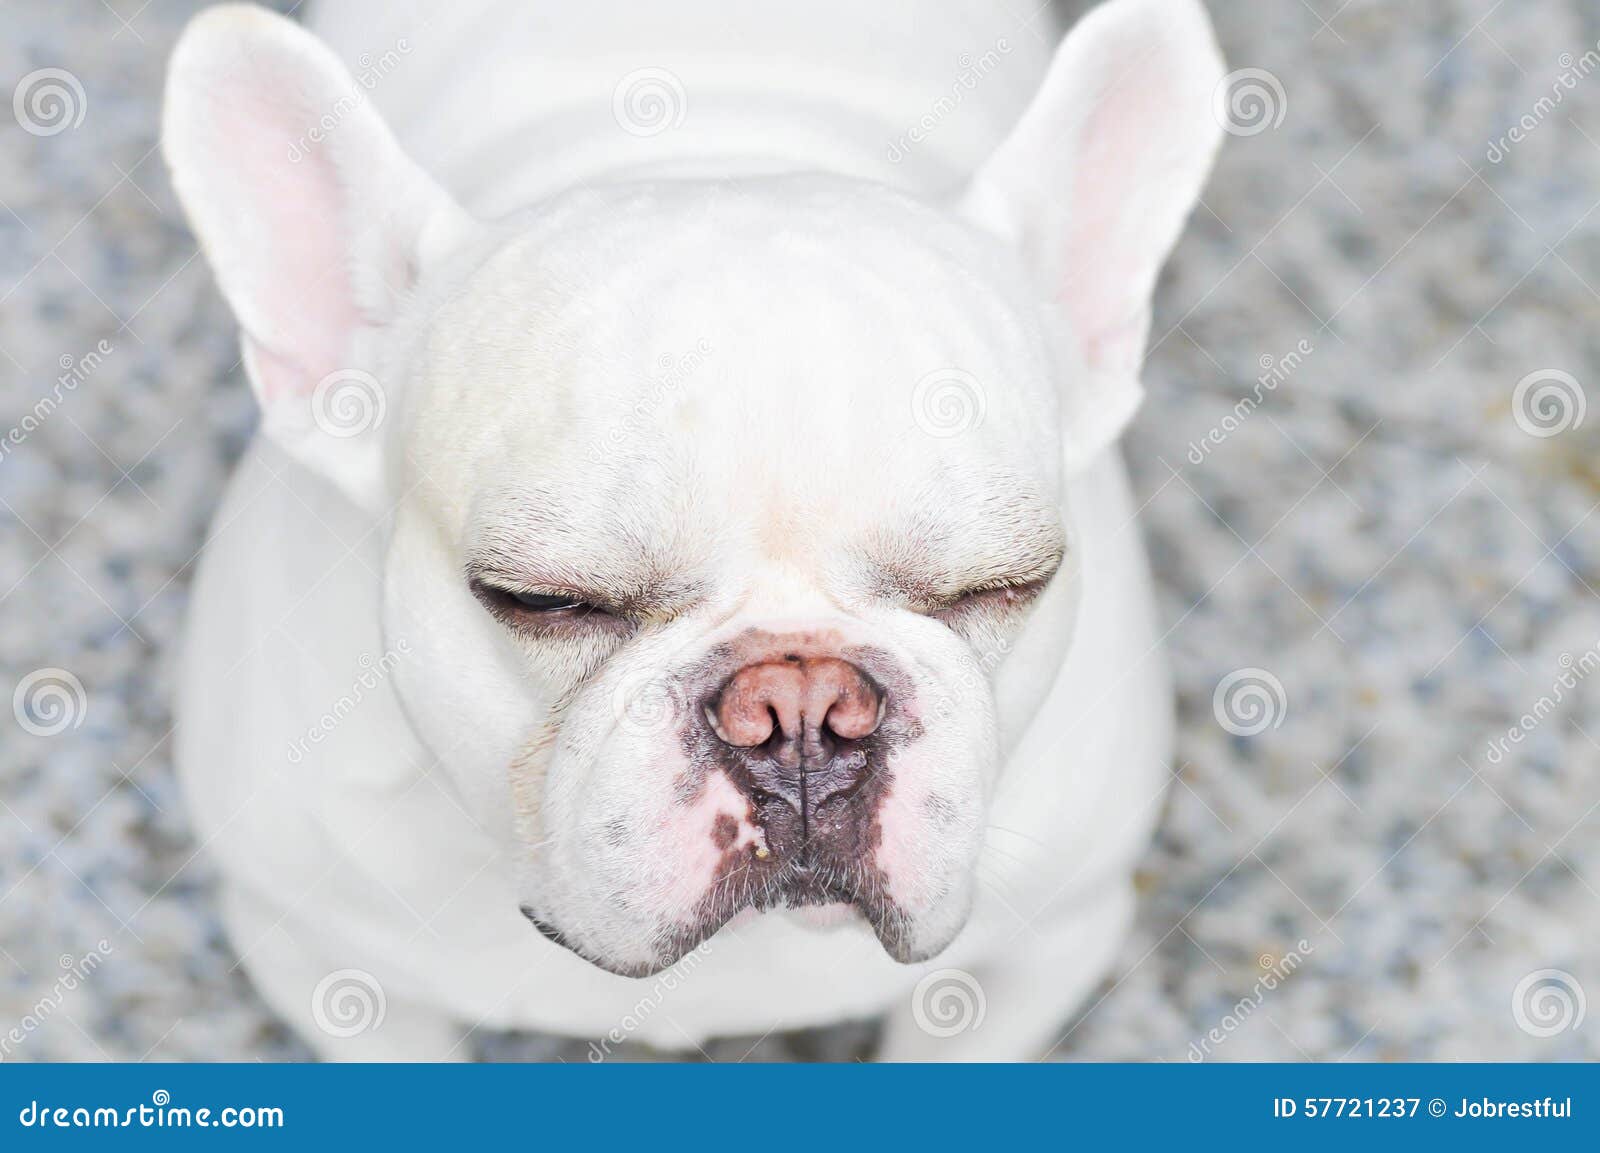 Sleepy French bulldog stock image. Image of funny, tired - 57721237